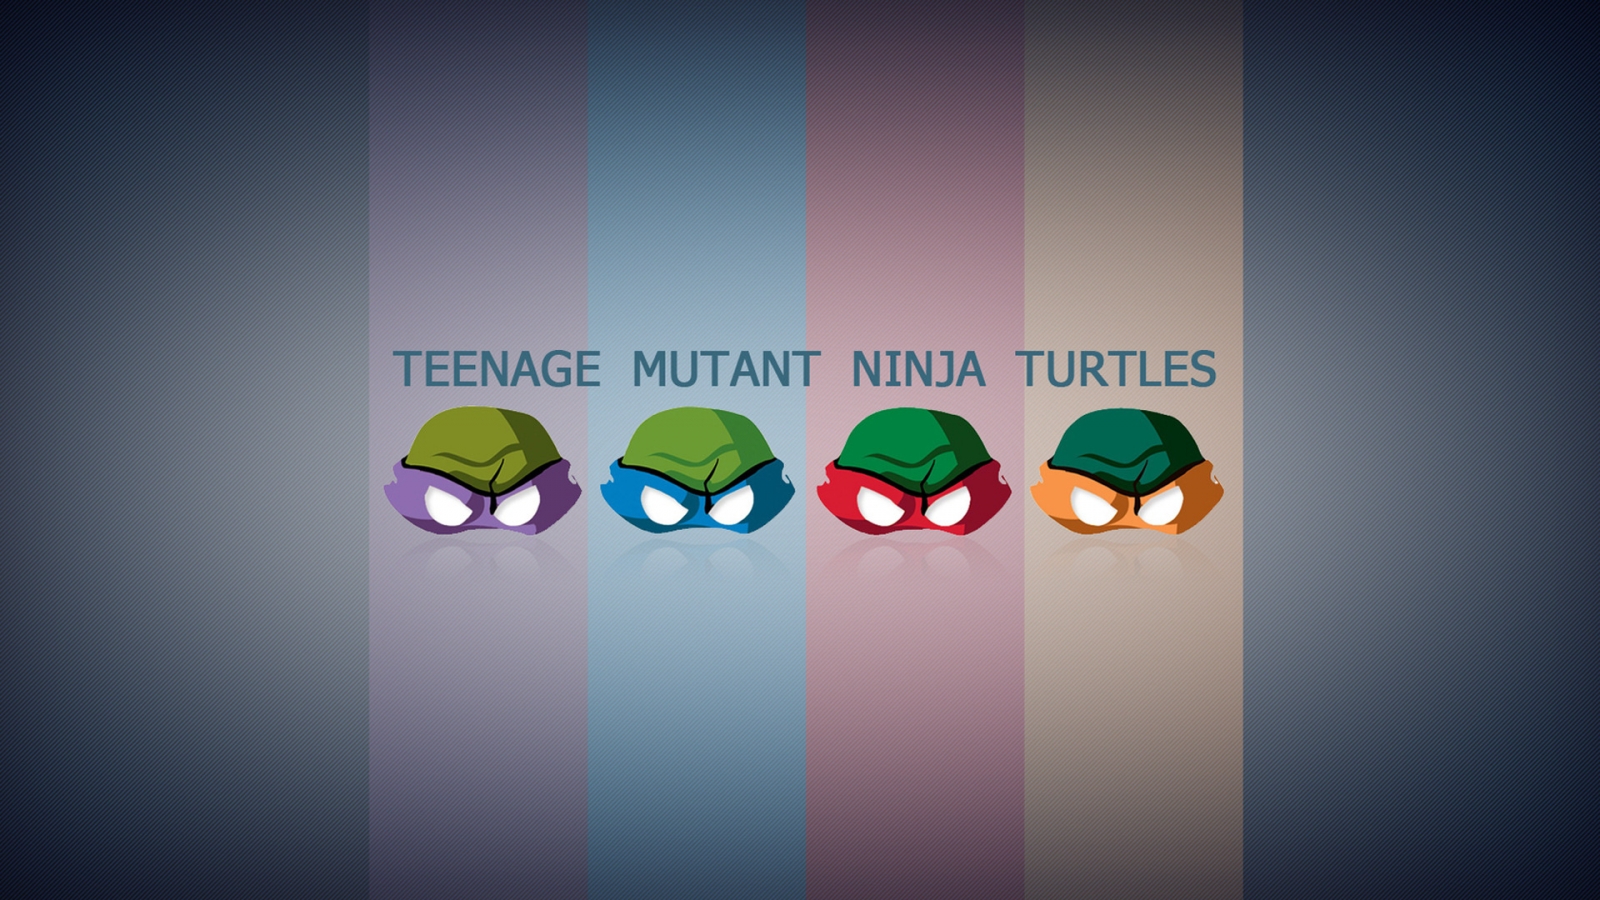 Teengae Mutant Ninja Turtles for 1600 x 900 HDTV resolution